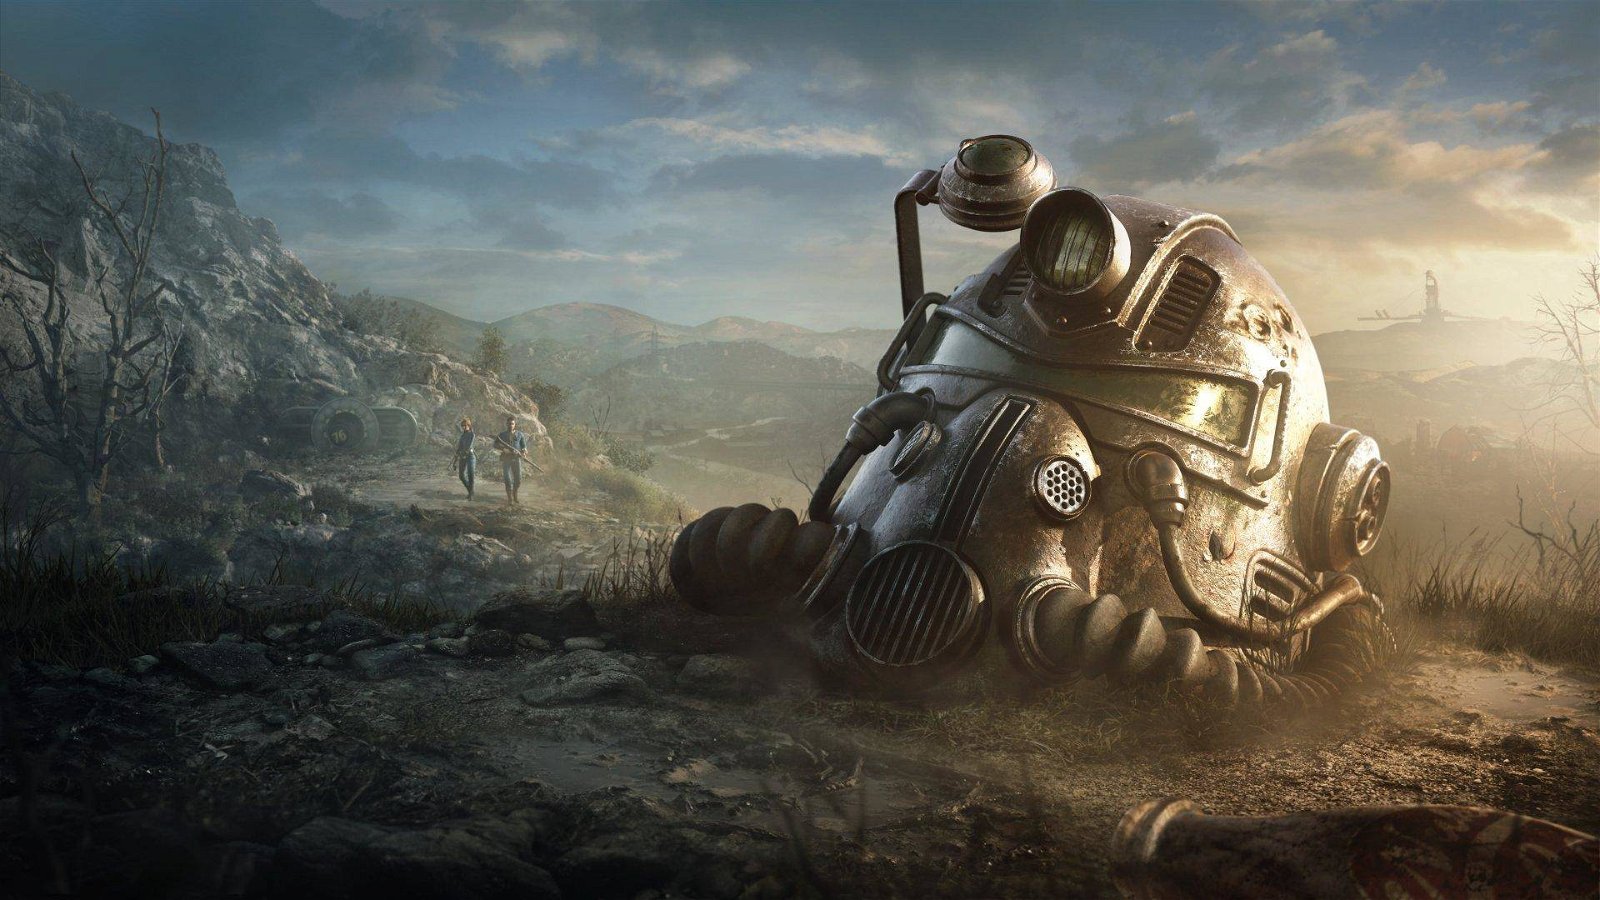 Immagine di Fallout, qualcuno ha inserito un tributo a Todd Howard